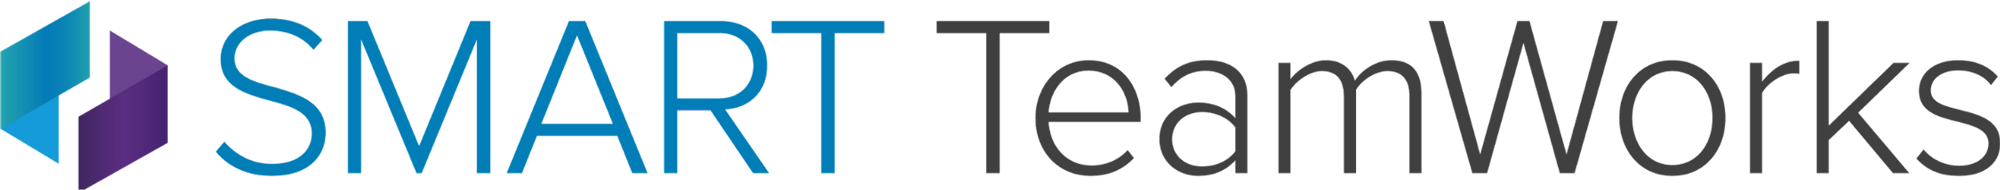 Smart TeamWorks logo